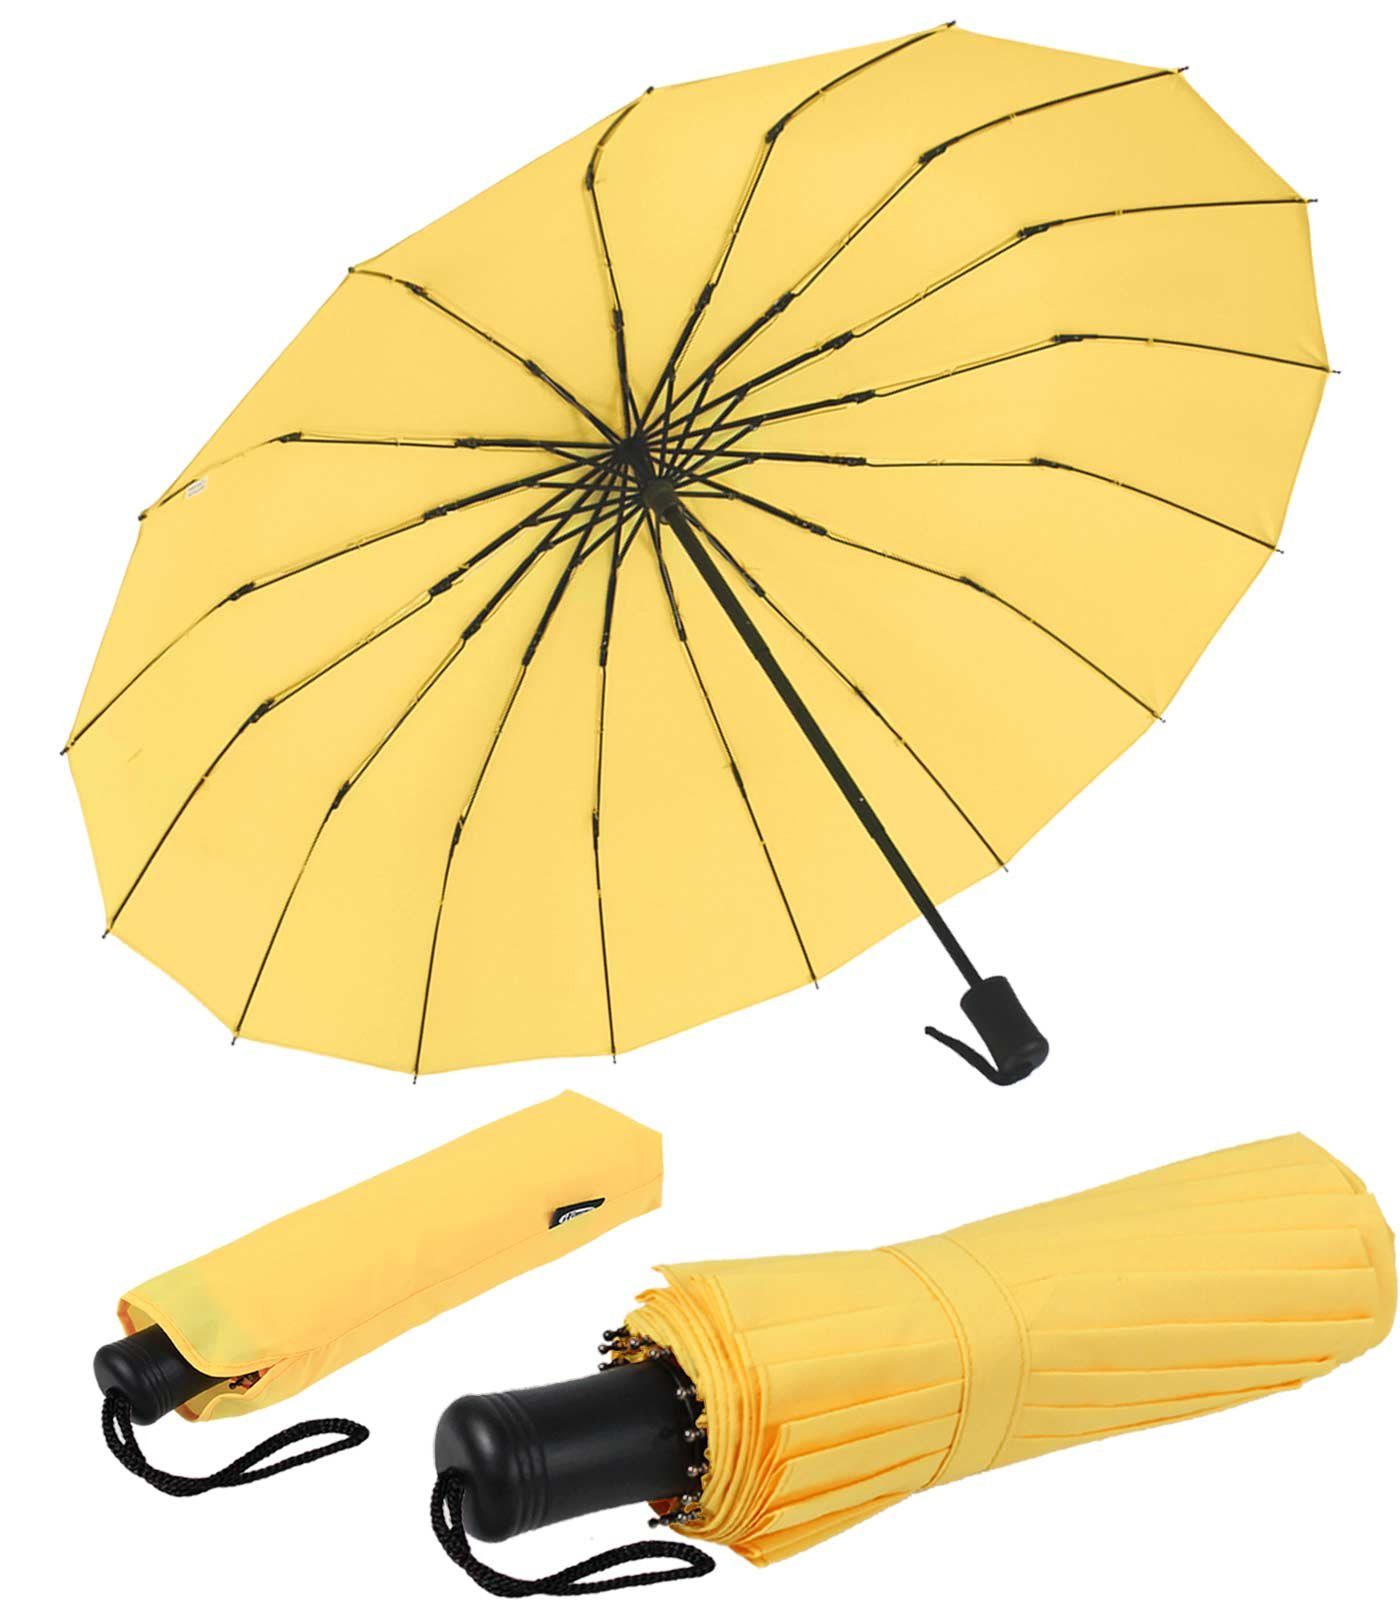 iX-brella Taschenregenschirm Mini mit 16 Streben extra stabil und farbenfroh, auffällig und extravagant gelb